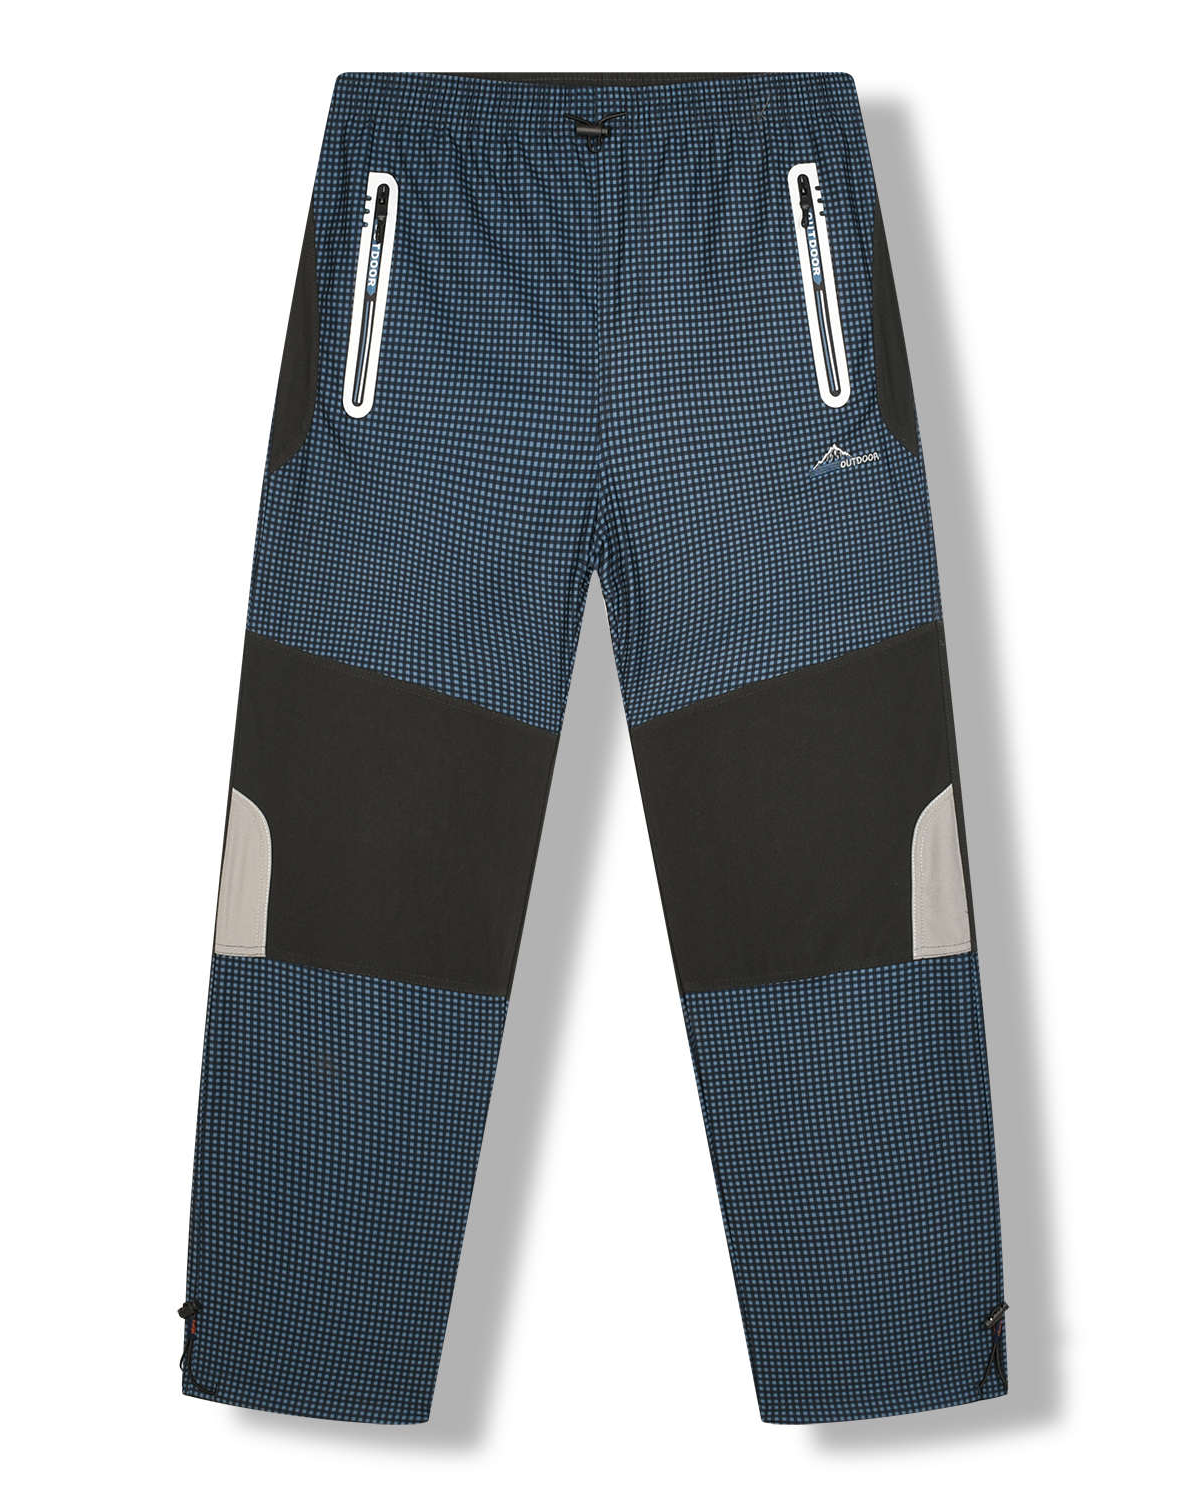 Pánské outdoorové kalhoty - KUGO G8551, petrol Barva: Petrol, Velikost: L